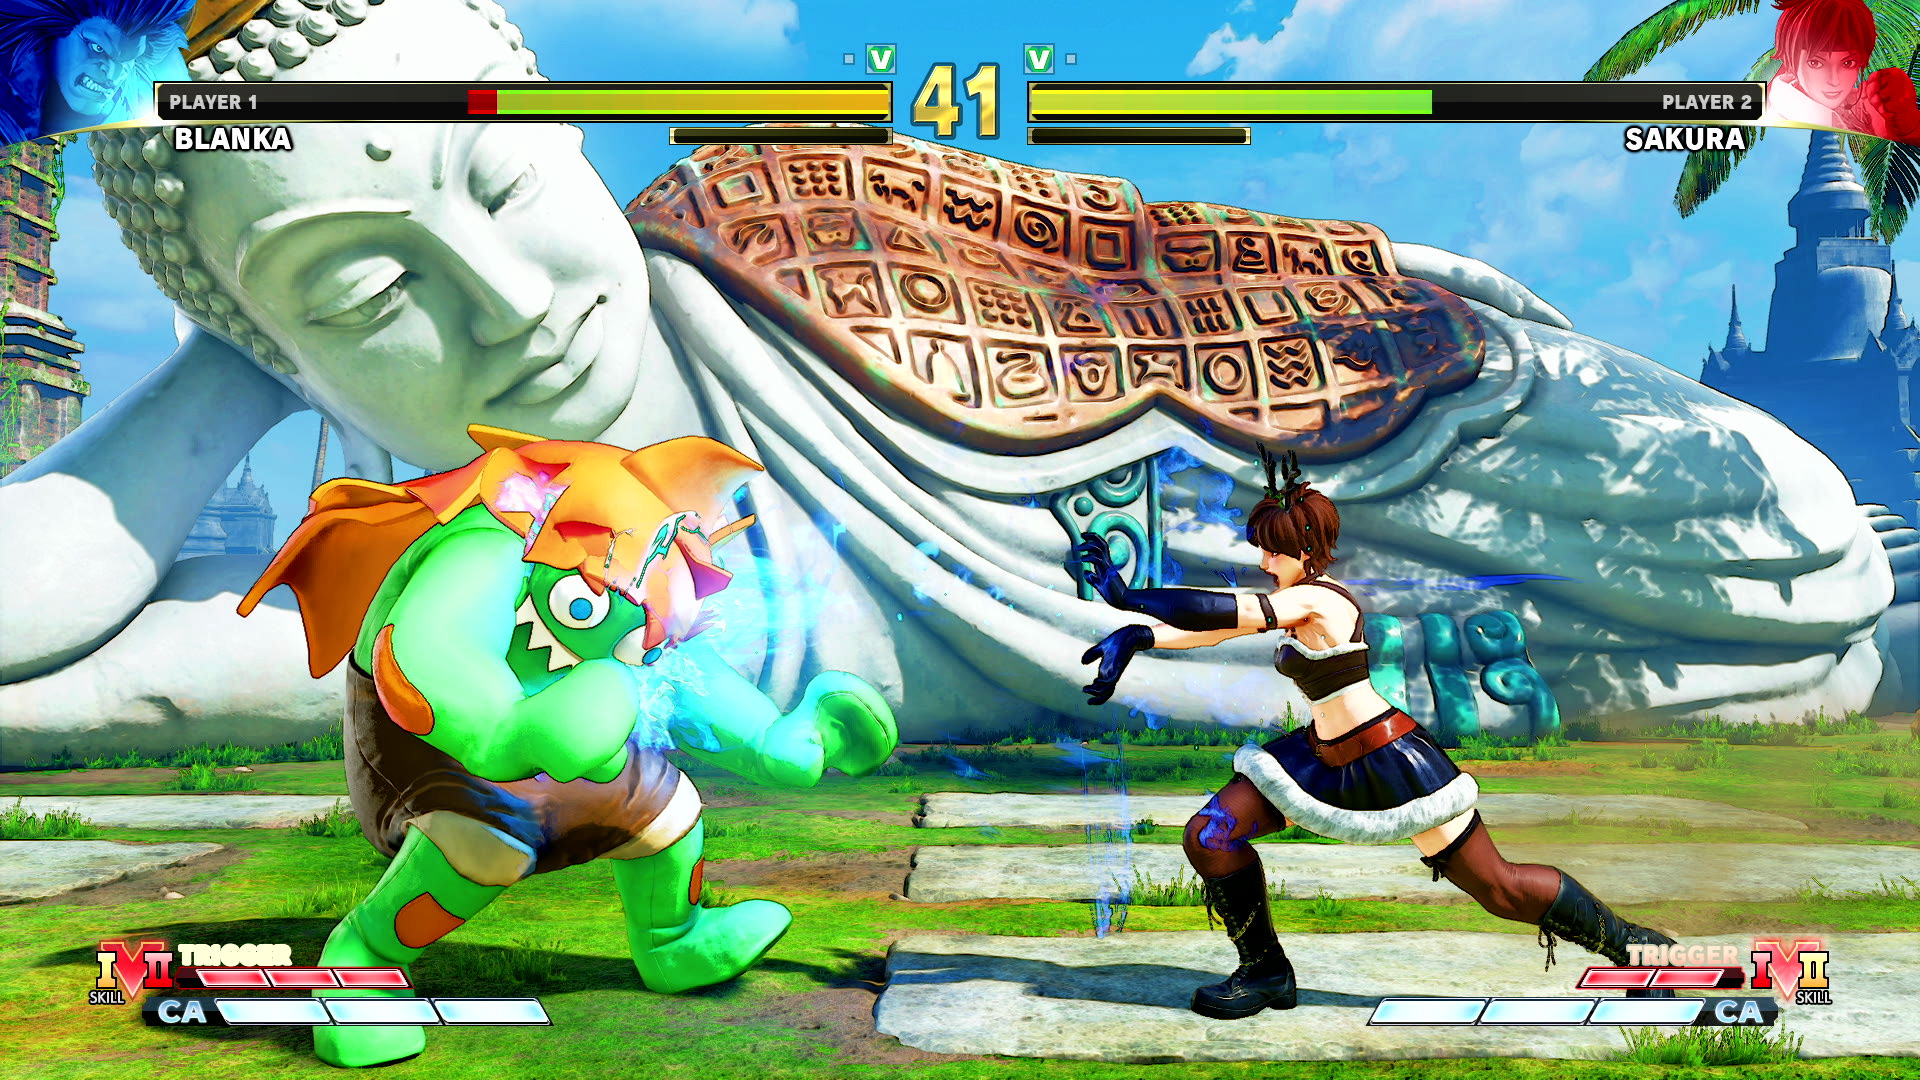 Street Fighter vs Mortal Kombat  - street fighter v champion edition - Player 1 Blanka 41 Player 2 Sakura